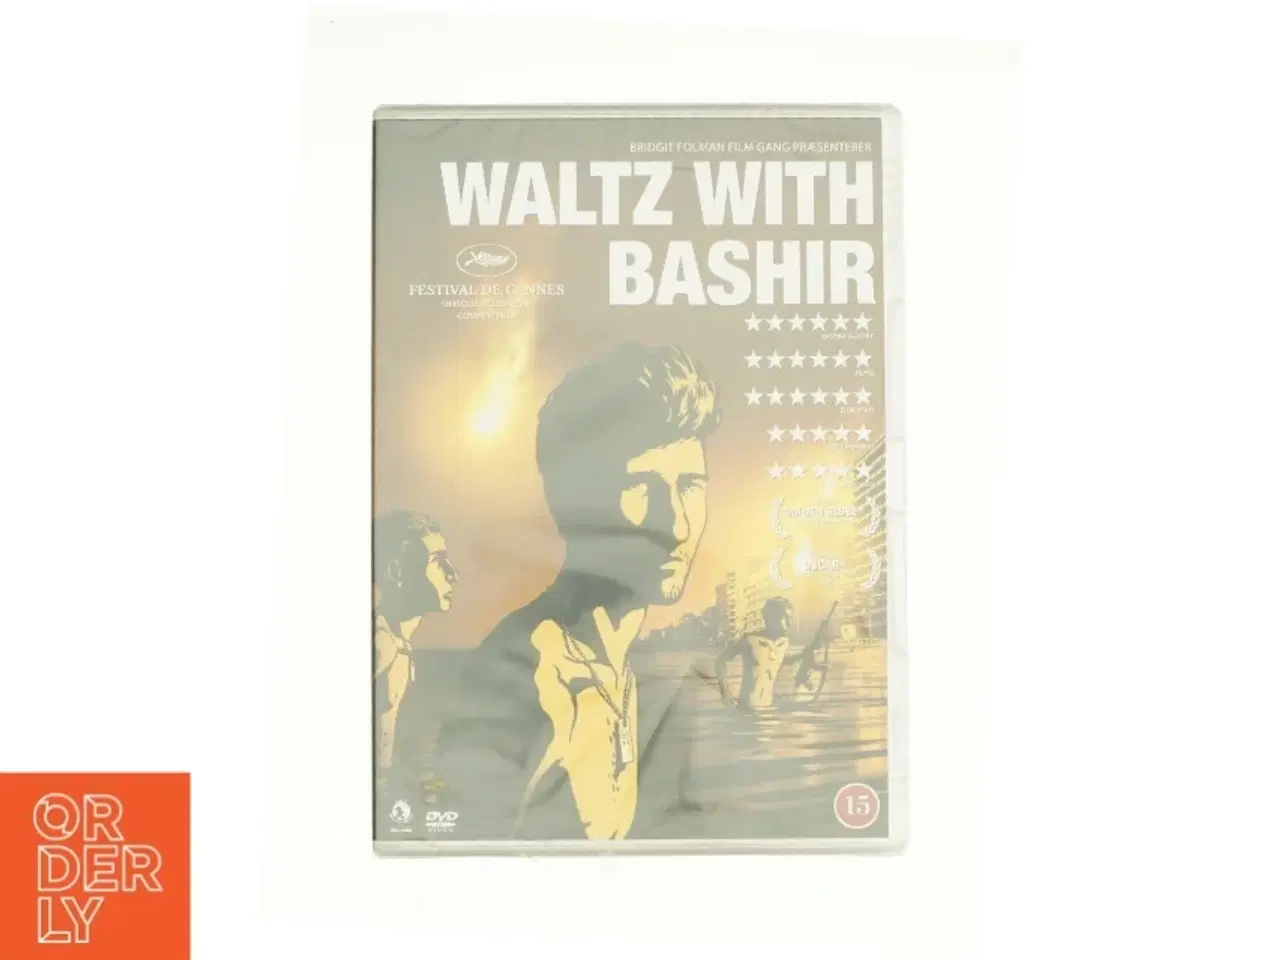 Billede 1 - Waltz With Bashir fra DVD